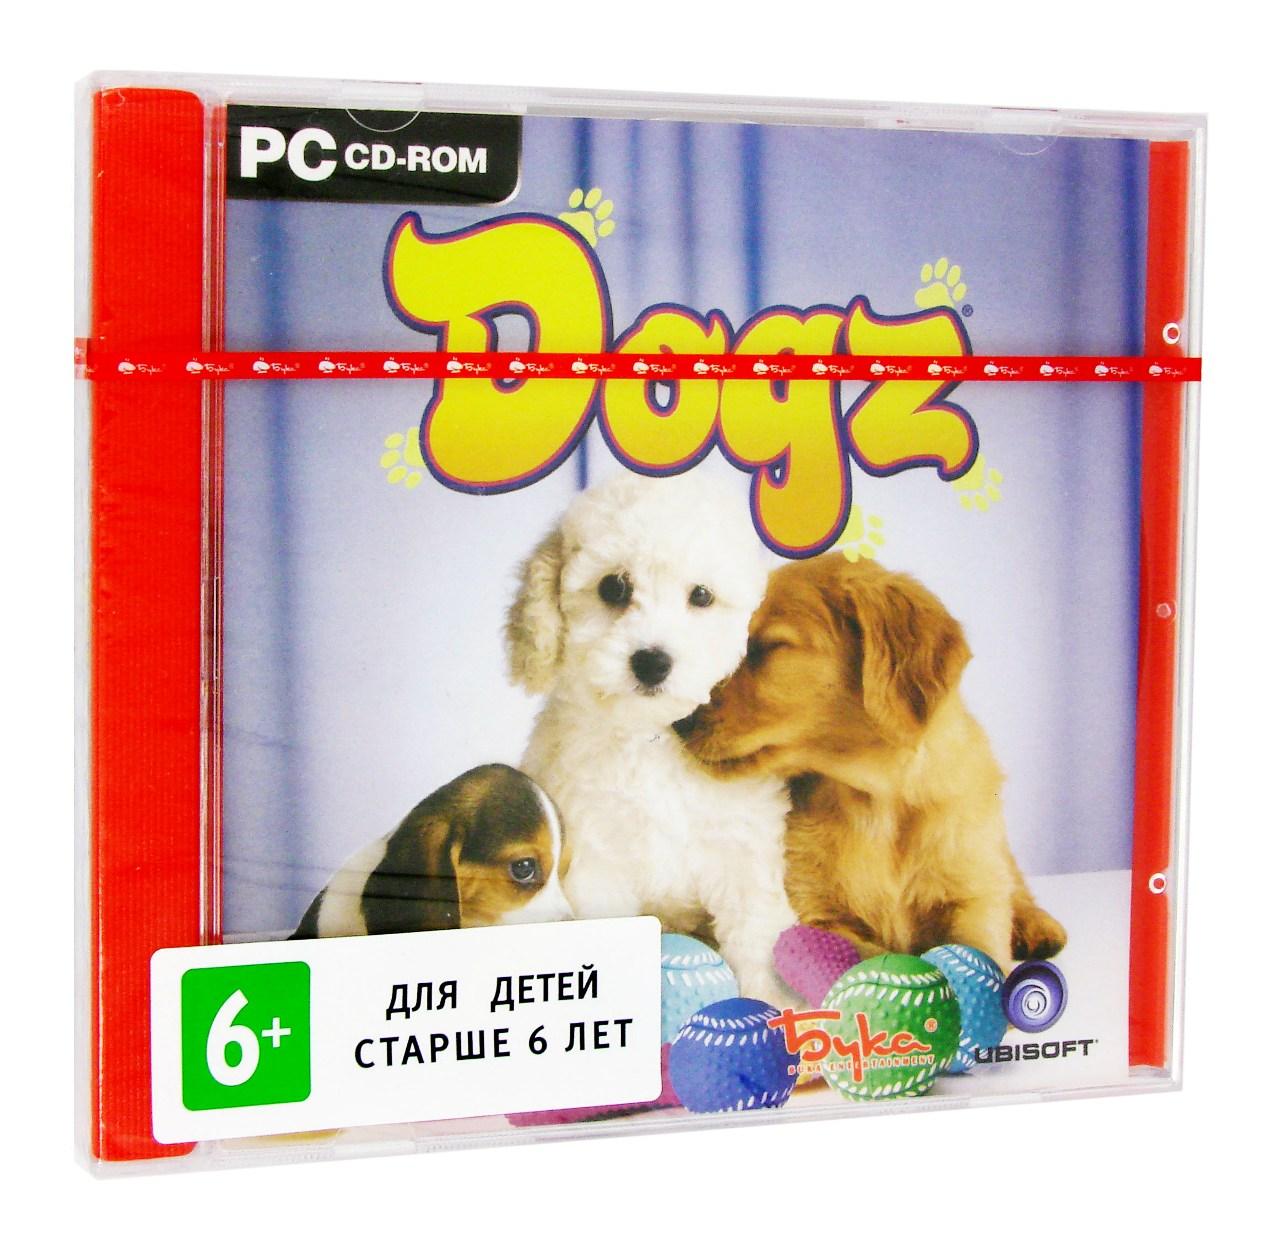 Компьютерный компакт-диск Dogz 6 (PC), фирма "Бука", 1CD